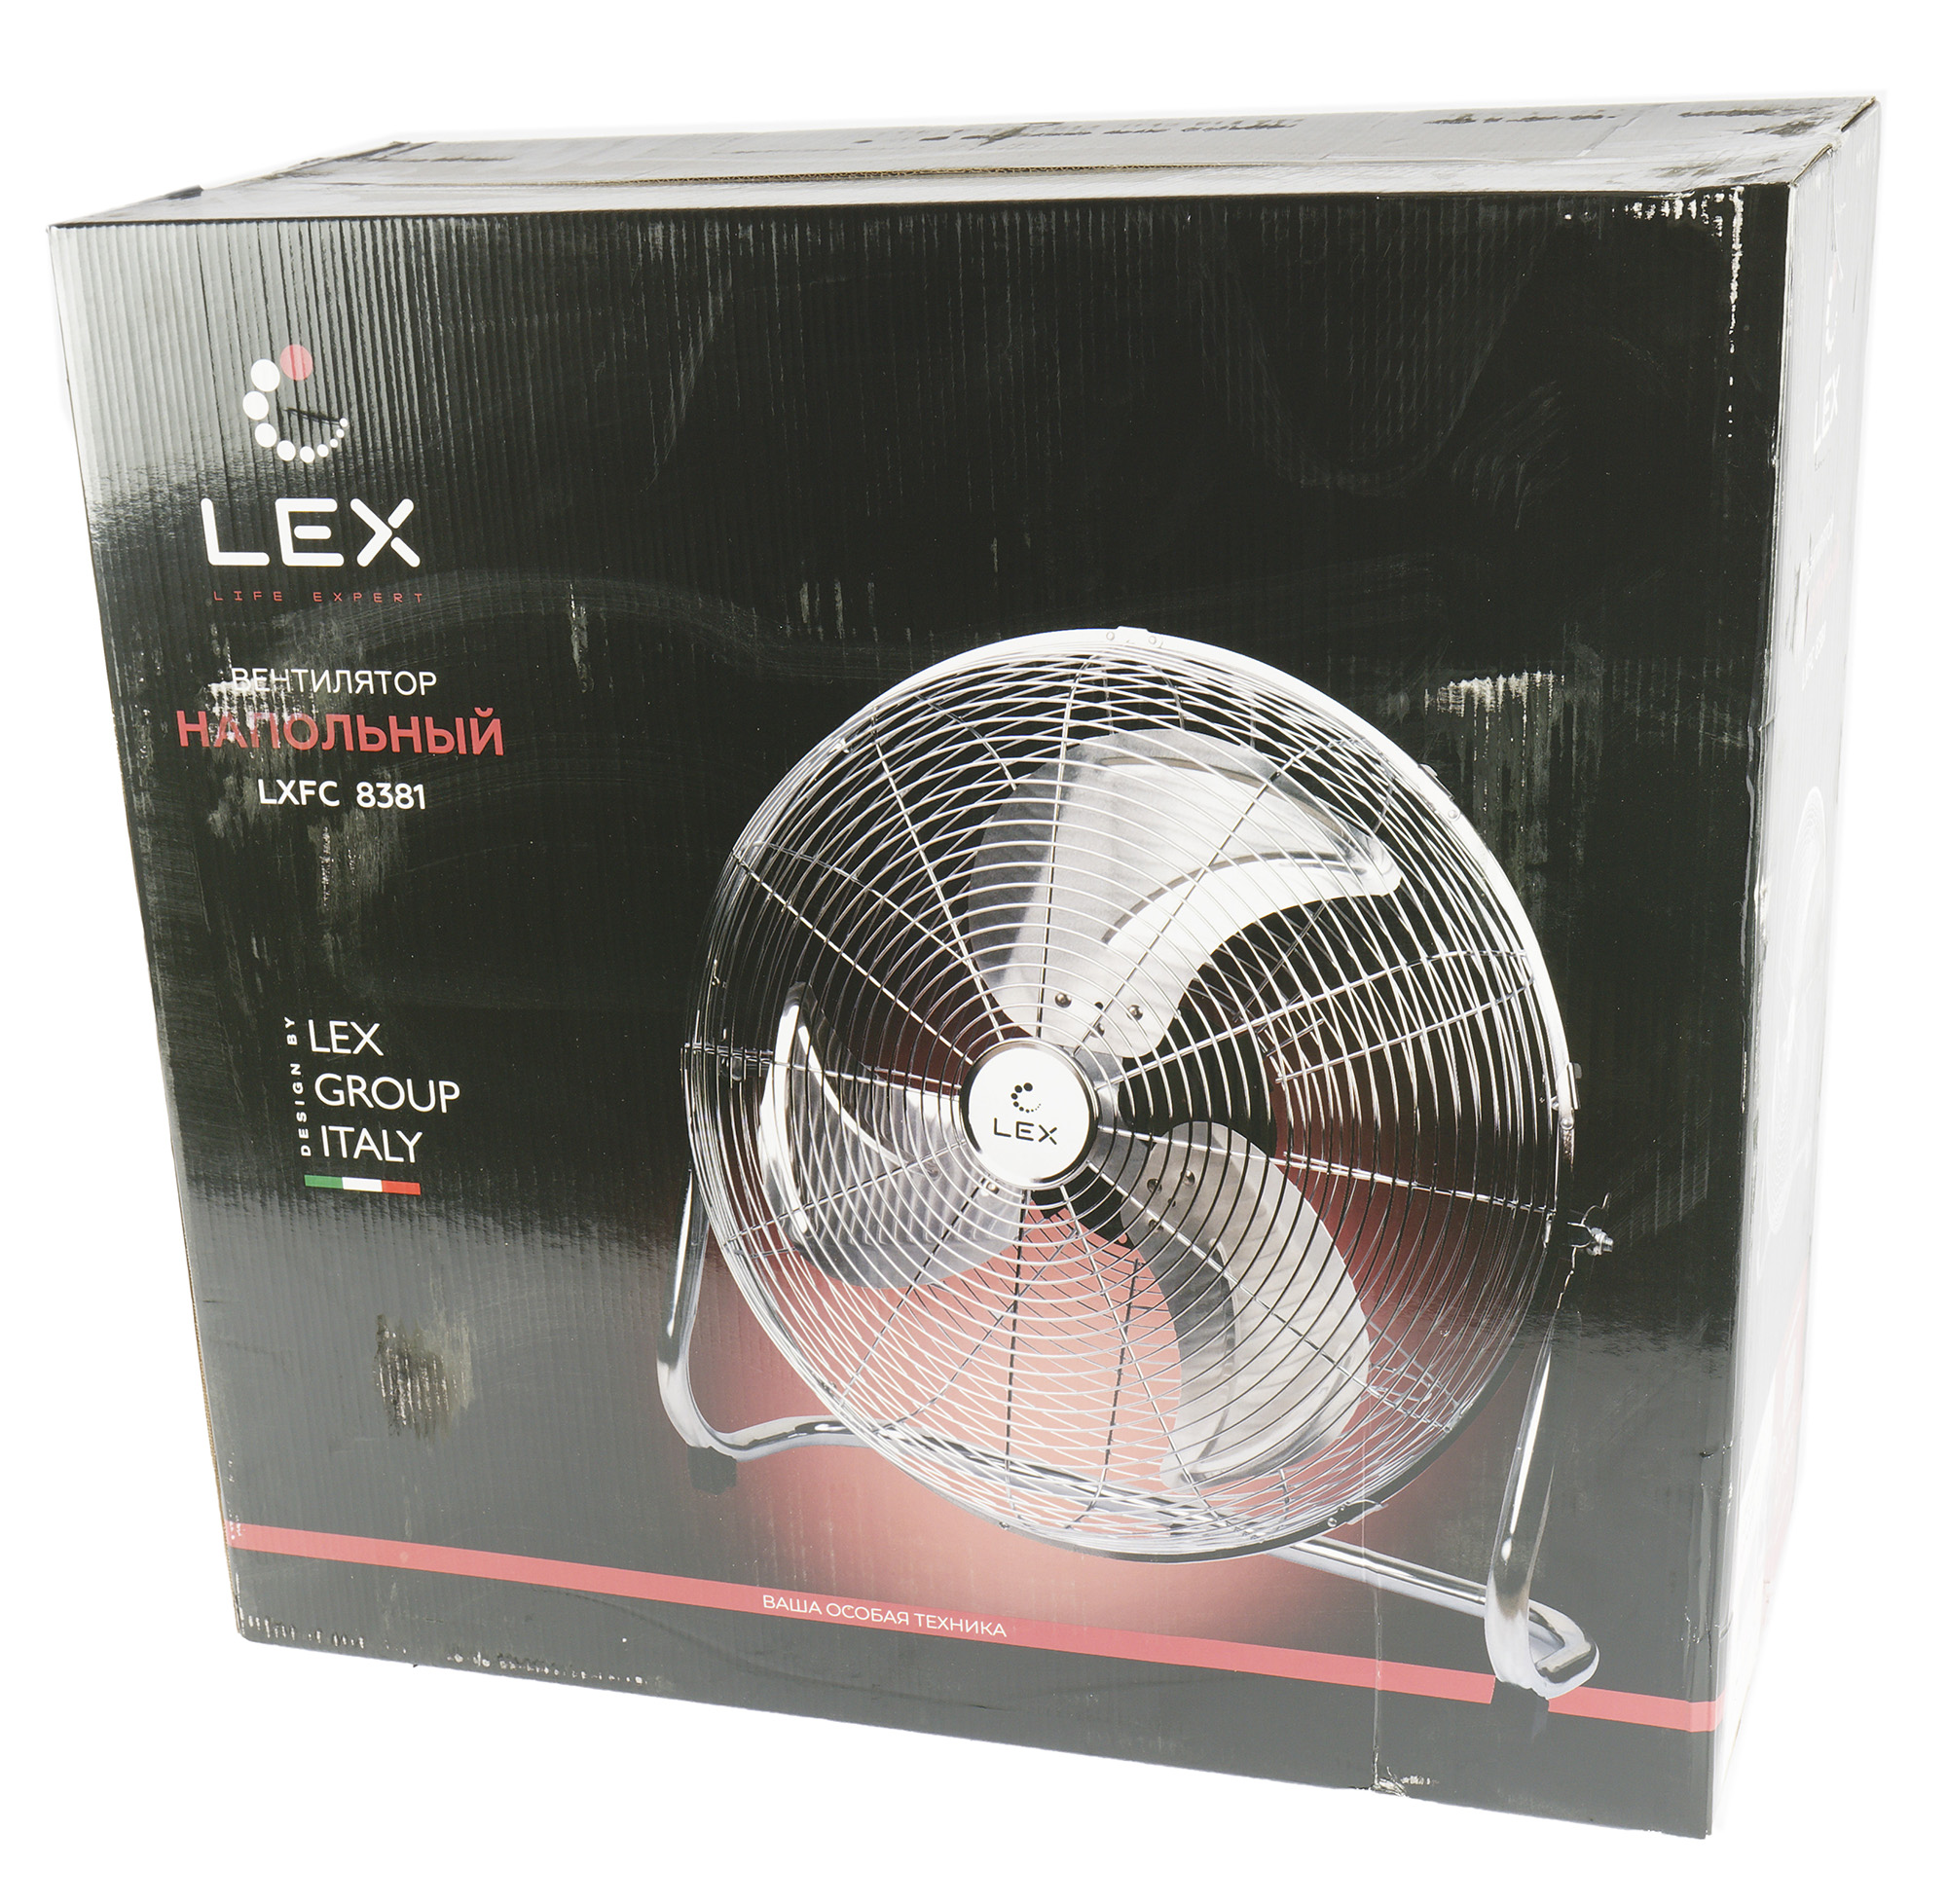 Почему вентилятор дует. Вентилятор напольный Lex LX FC 8381. Напольный вентилятор Lex LXFC 8381 , 20", 150вт, стальной.. LXFC 8320 вентилятор. Вентилятор Lex LX FC 8344.